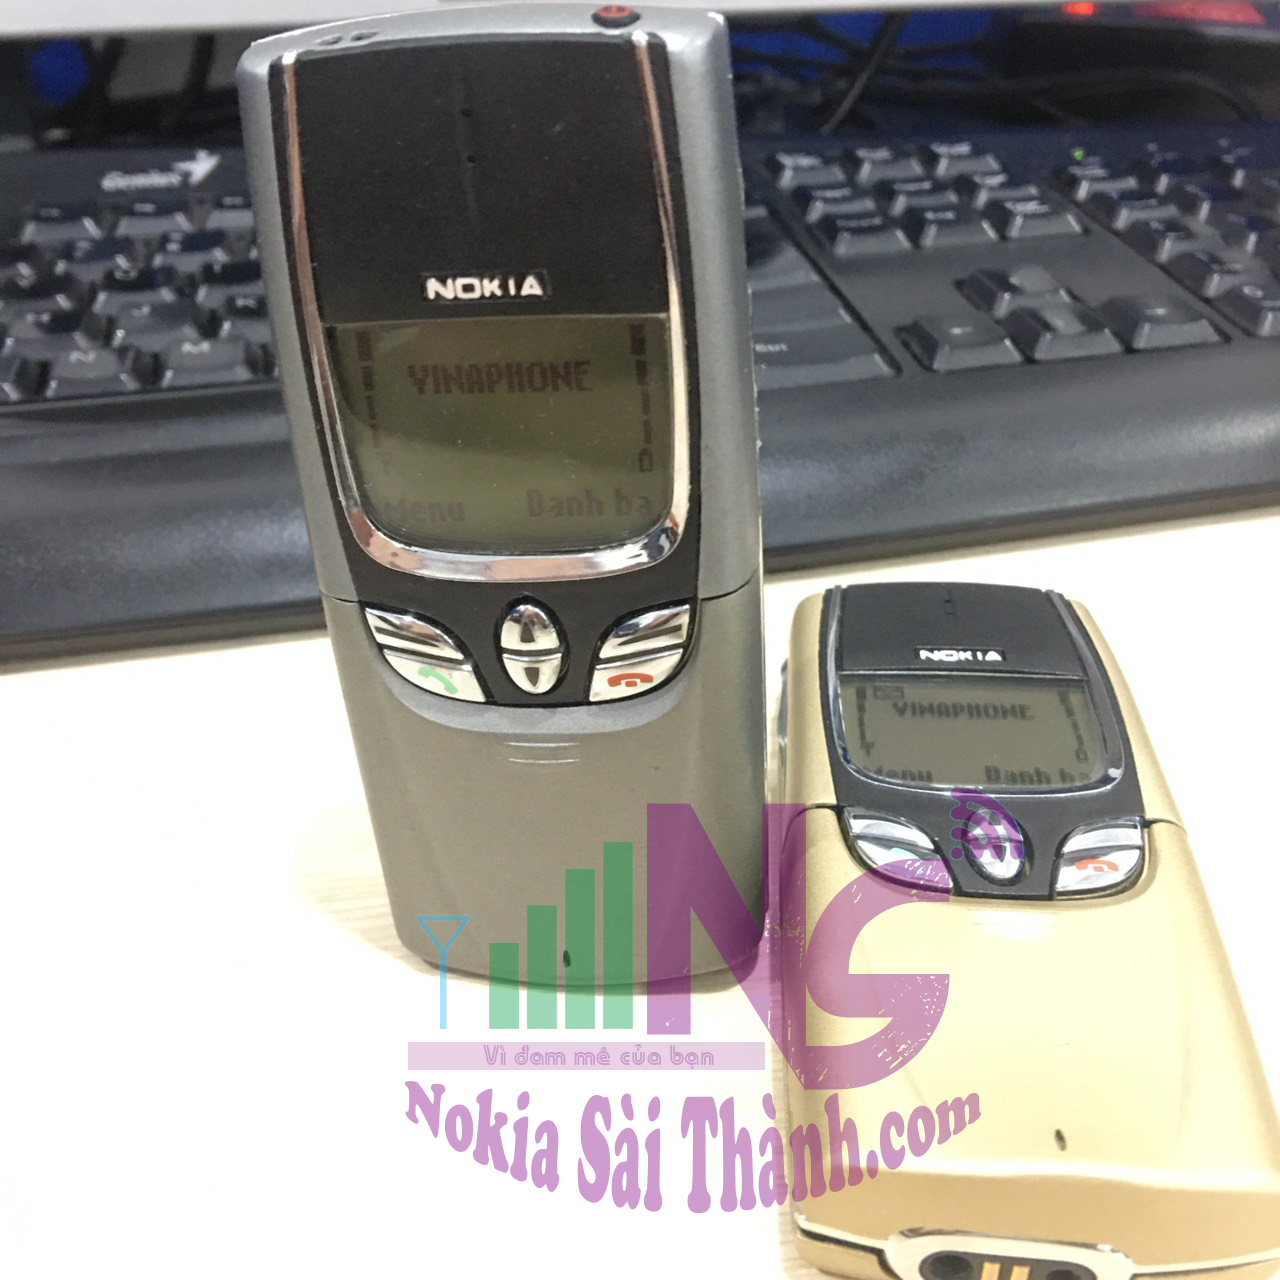 Nokia 8850 - Nokia Sài Thành